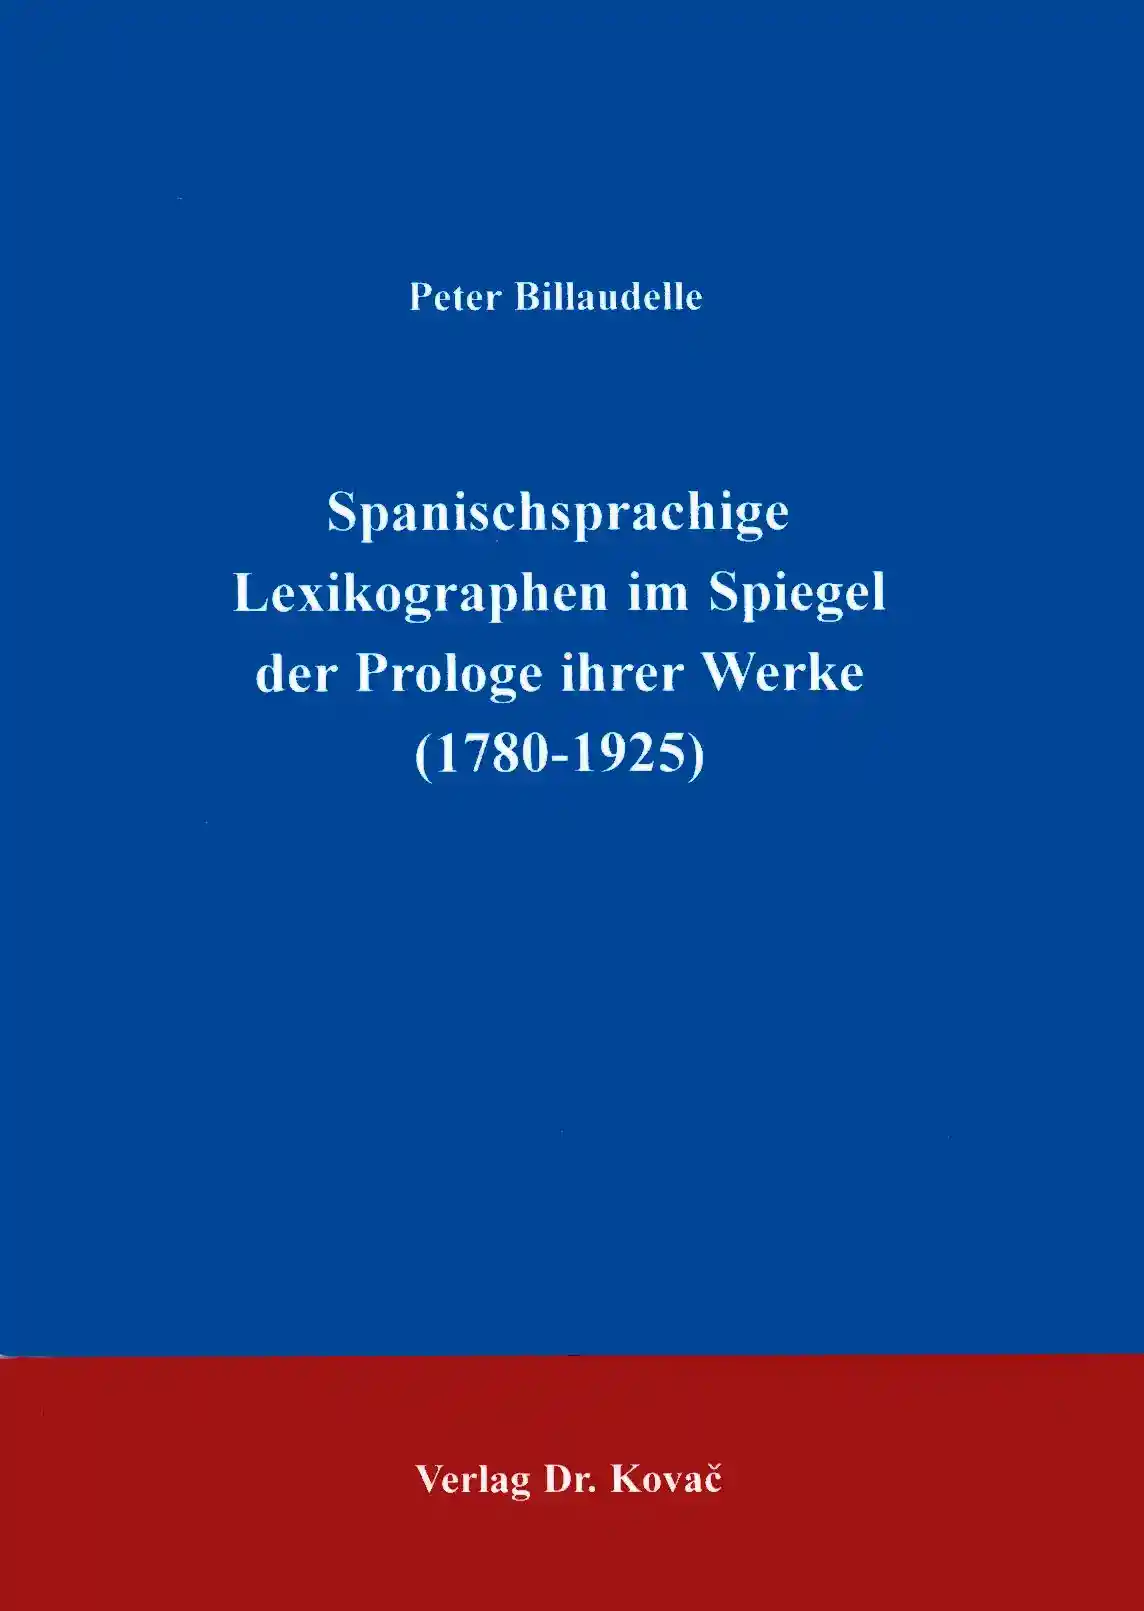  Forschungsarbeit: Spanischsprachige Lexikographen im Spiegel der Prologe ihrer Werke (17801925)